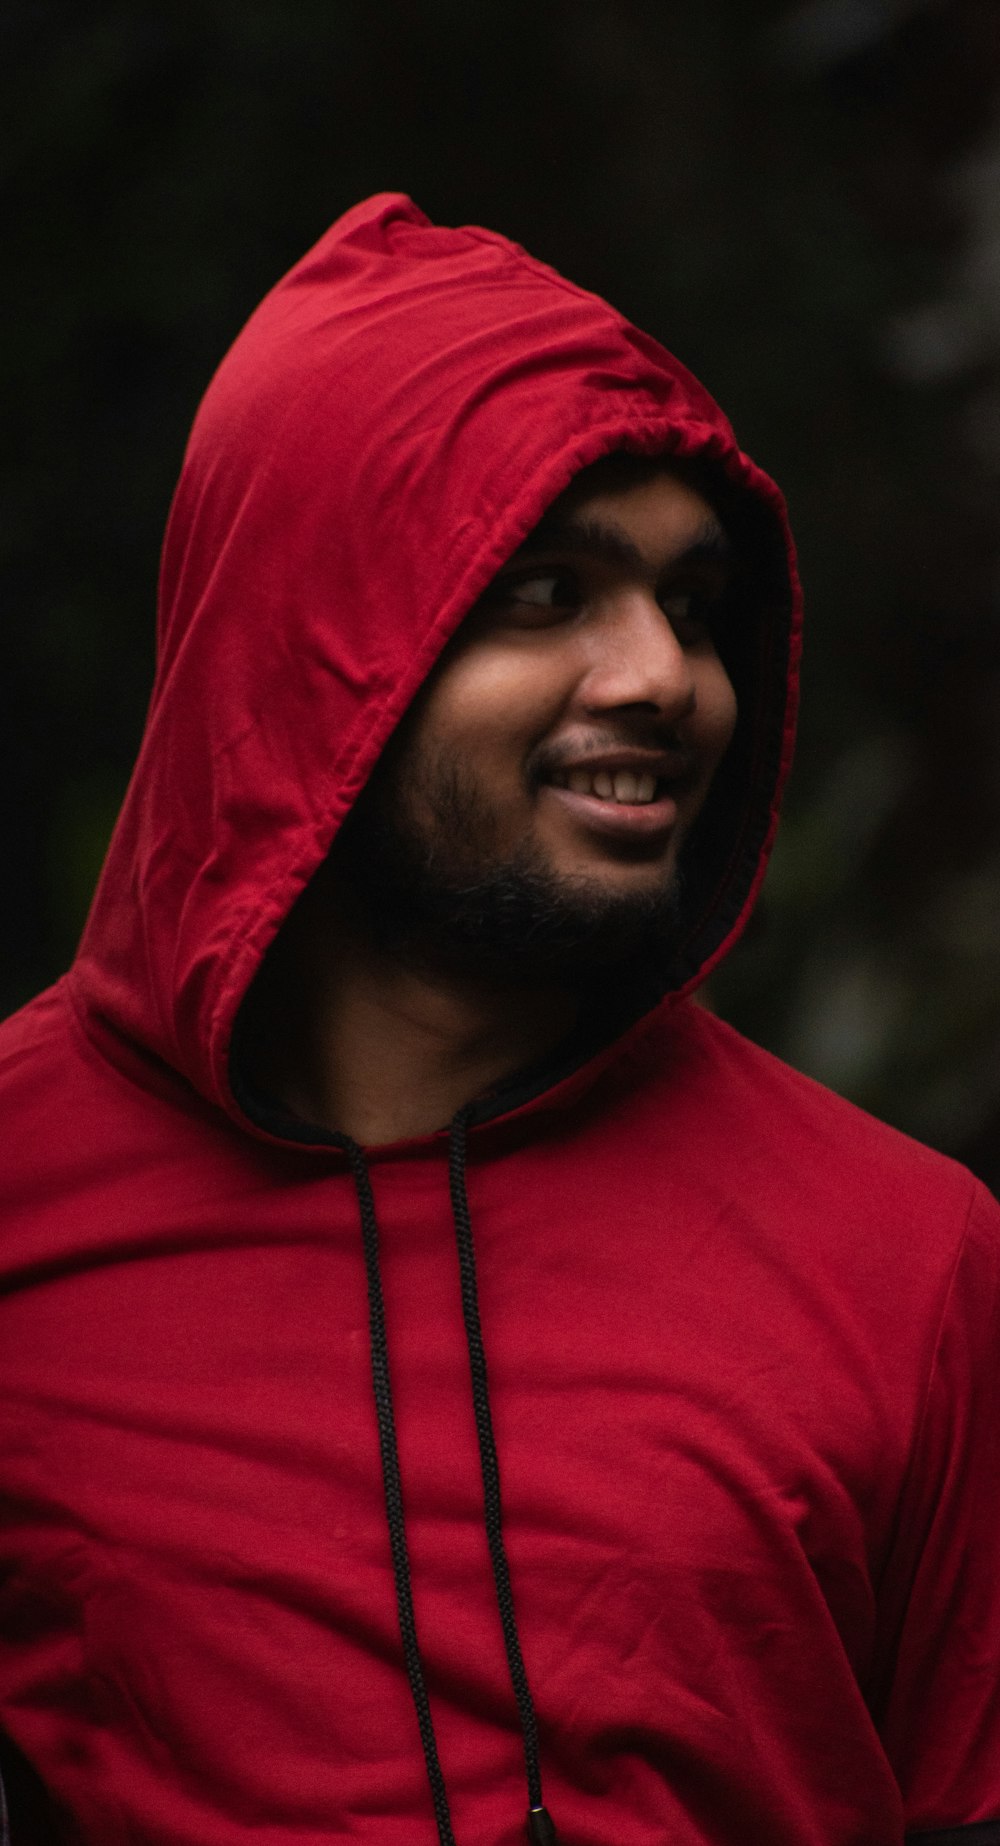 Mann in rotem Kapuzenpullover lächelt